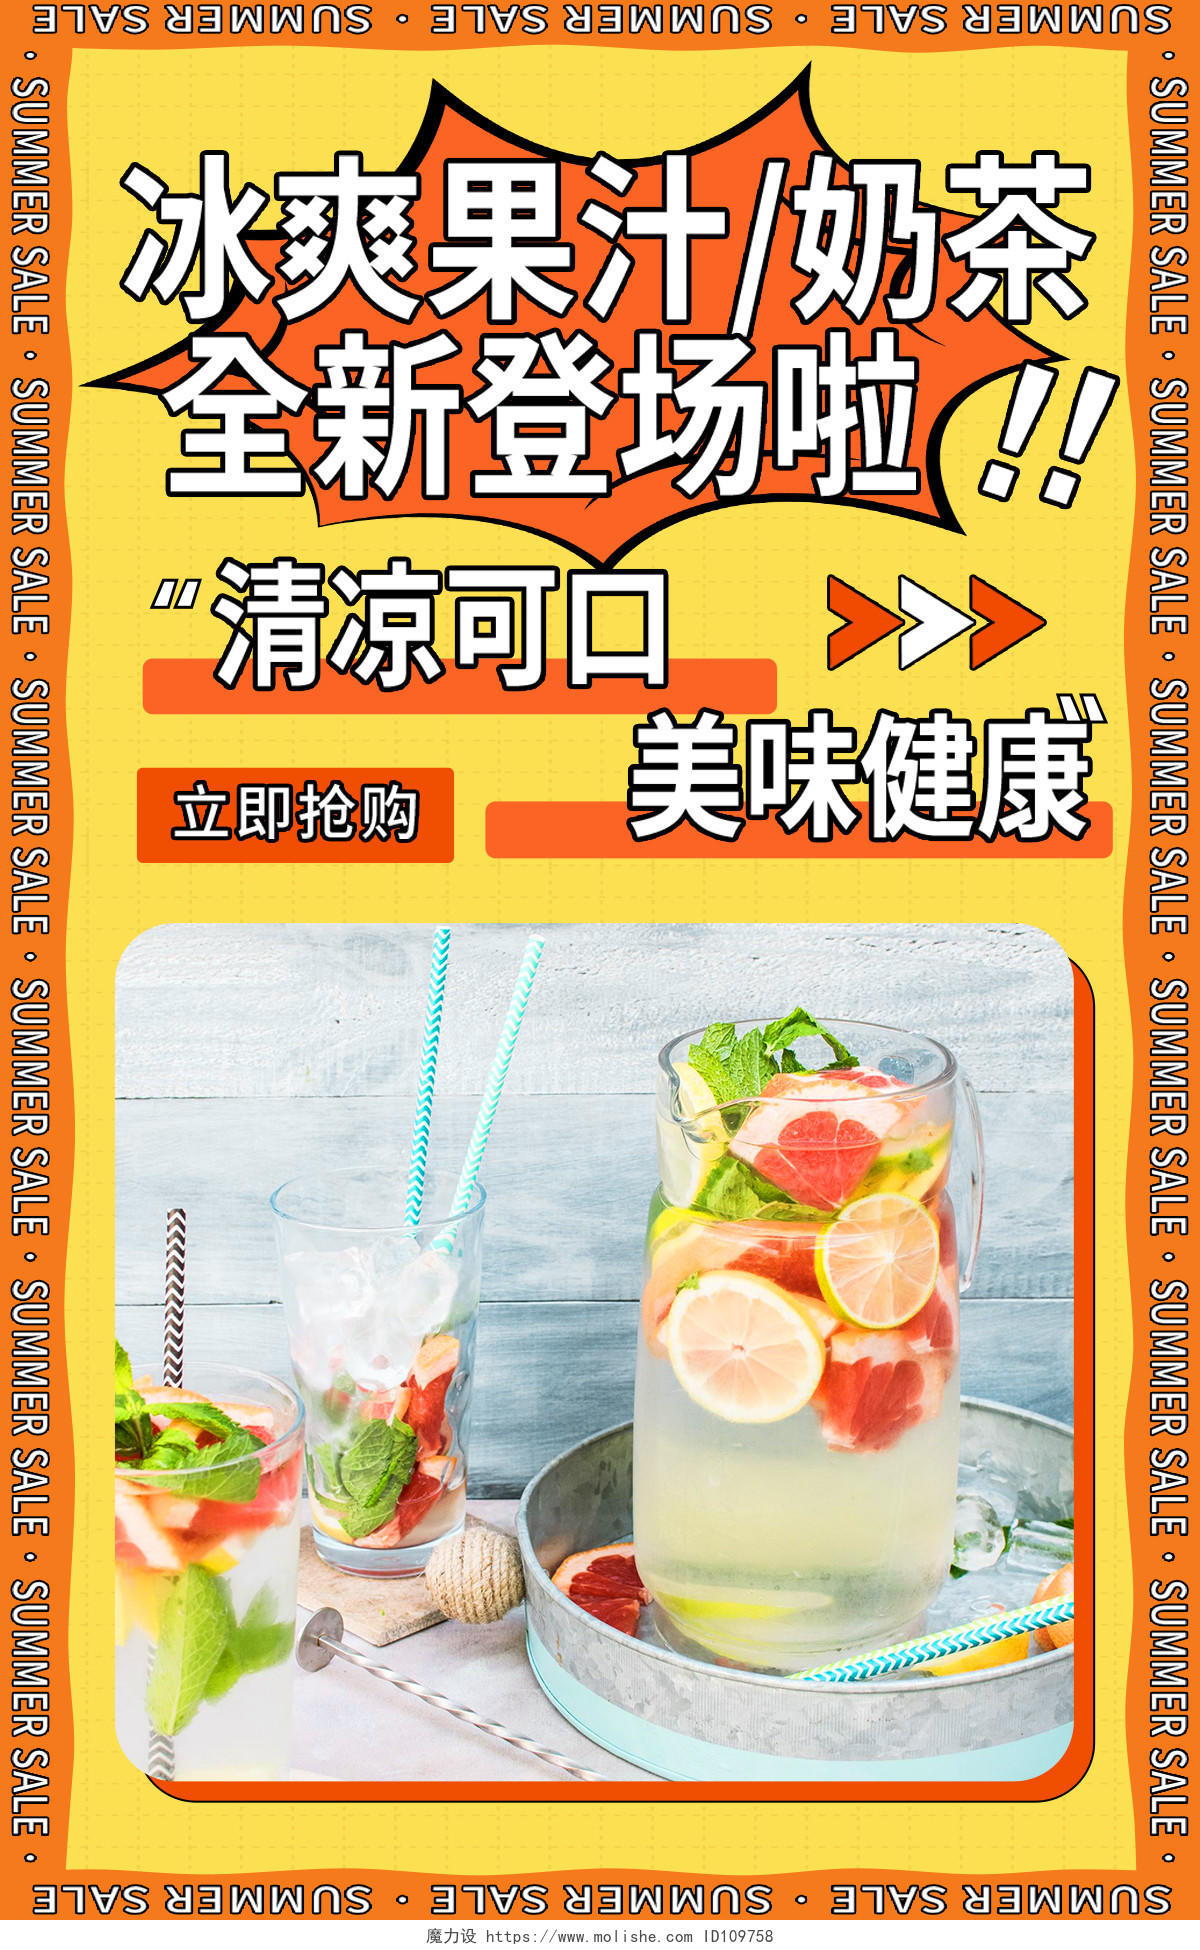 橙黄色平面风格冰爽果汁夏季饮品717吃货节海报banner